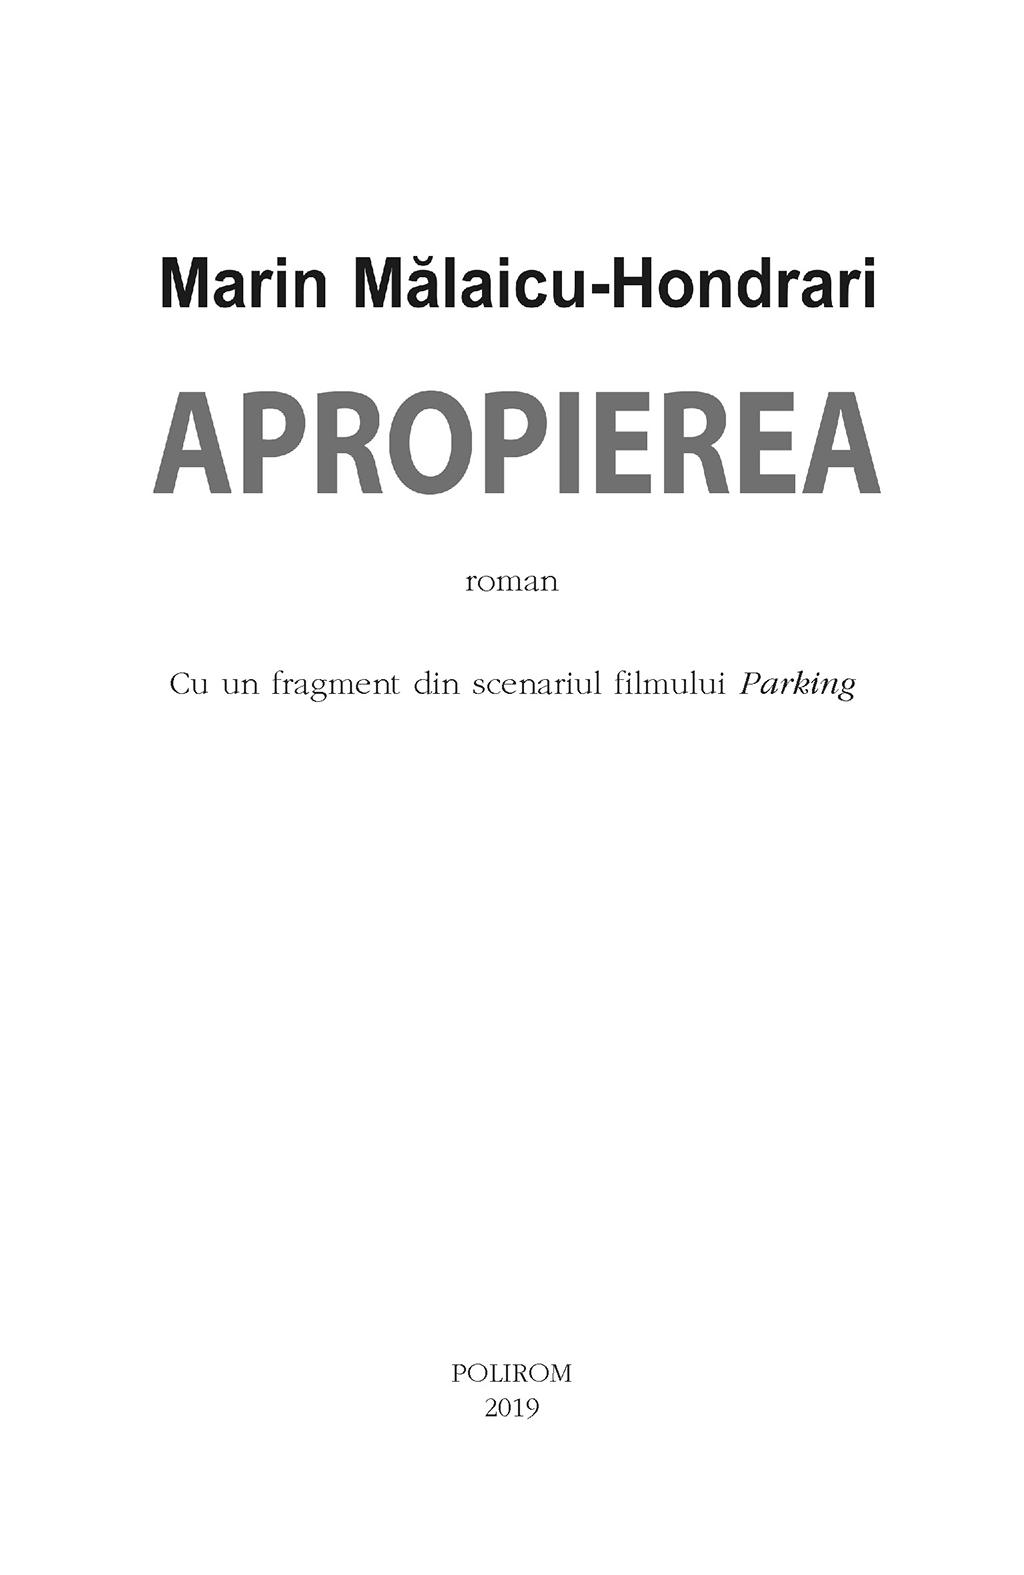 Apropierea | Marin Malaicu-Hondrari - 4